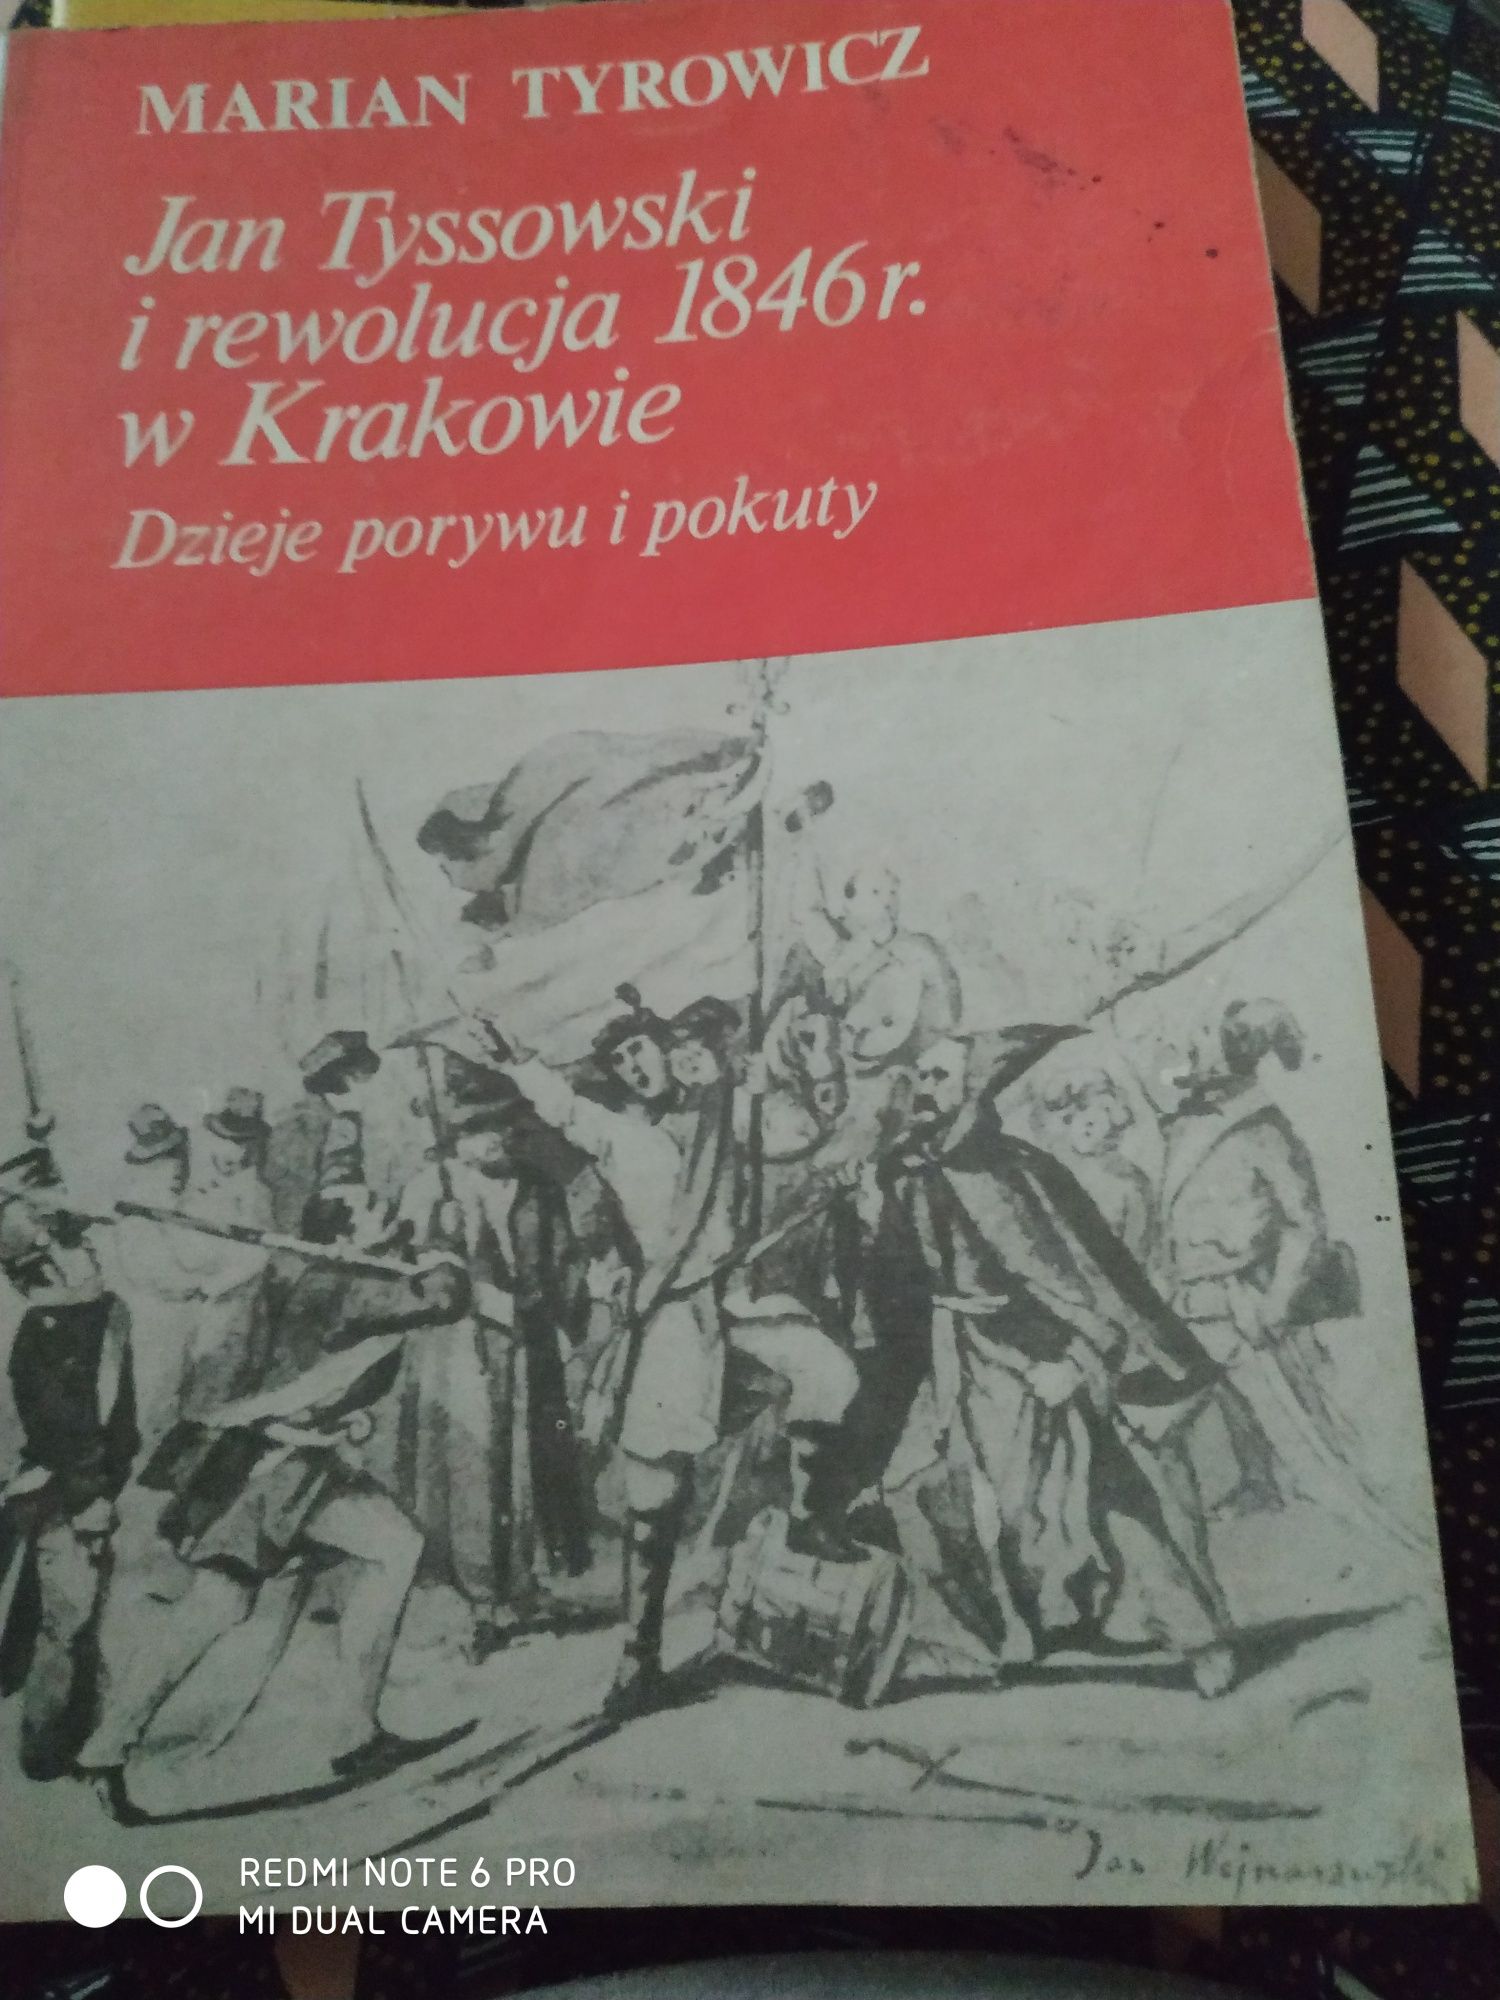 Jan Tyssowski  i rewolucja 1846 w Krakowie. Marian Tyrowicz. 1986